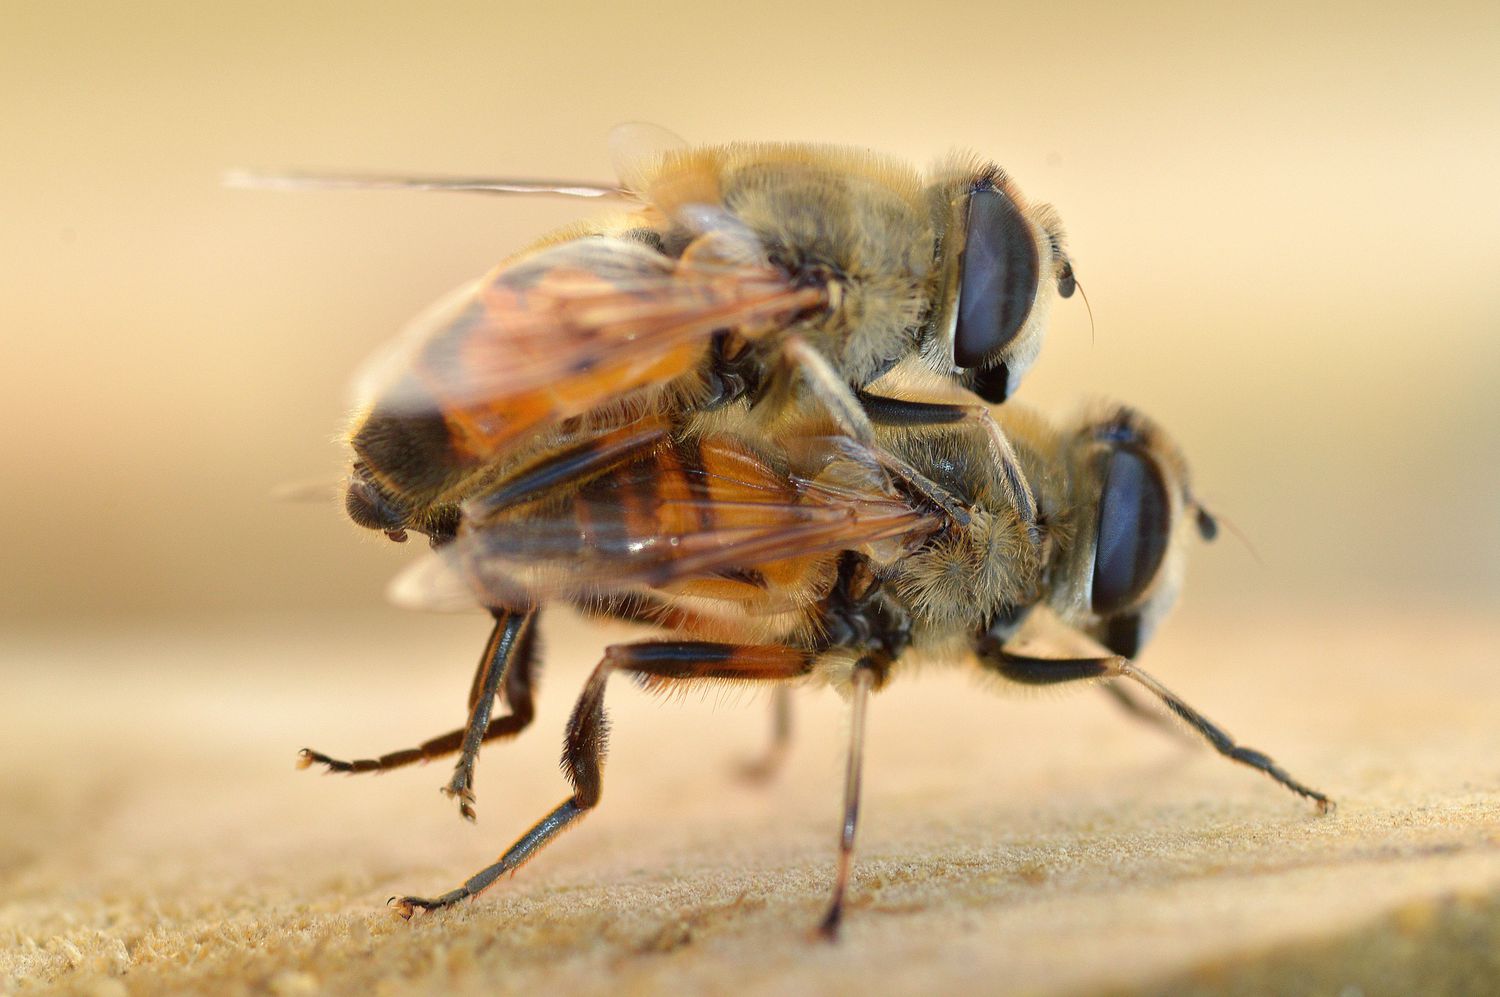 Bees mating